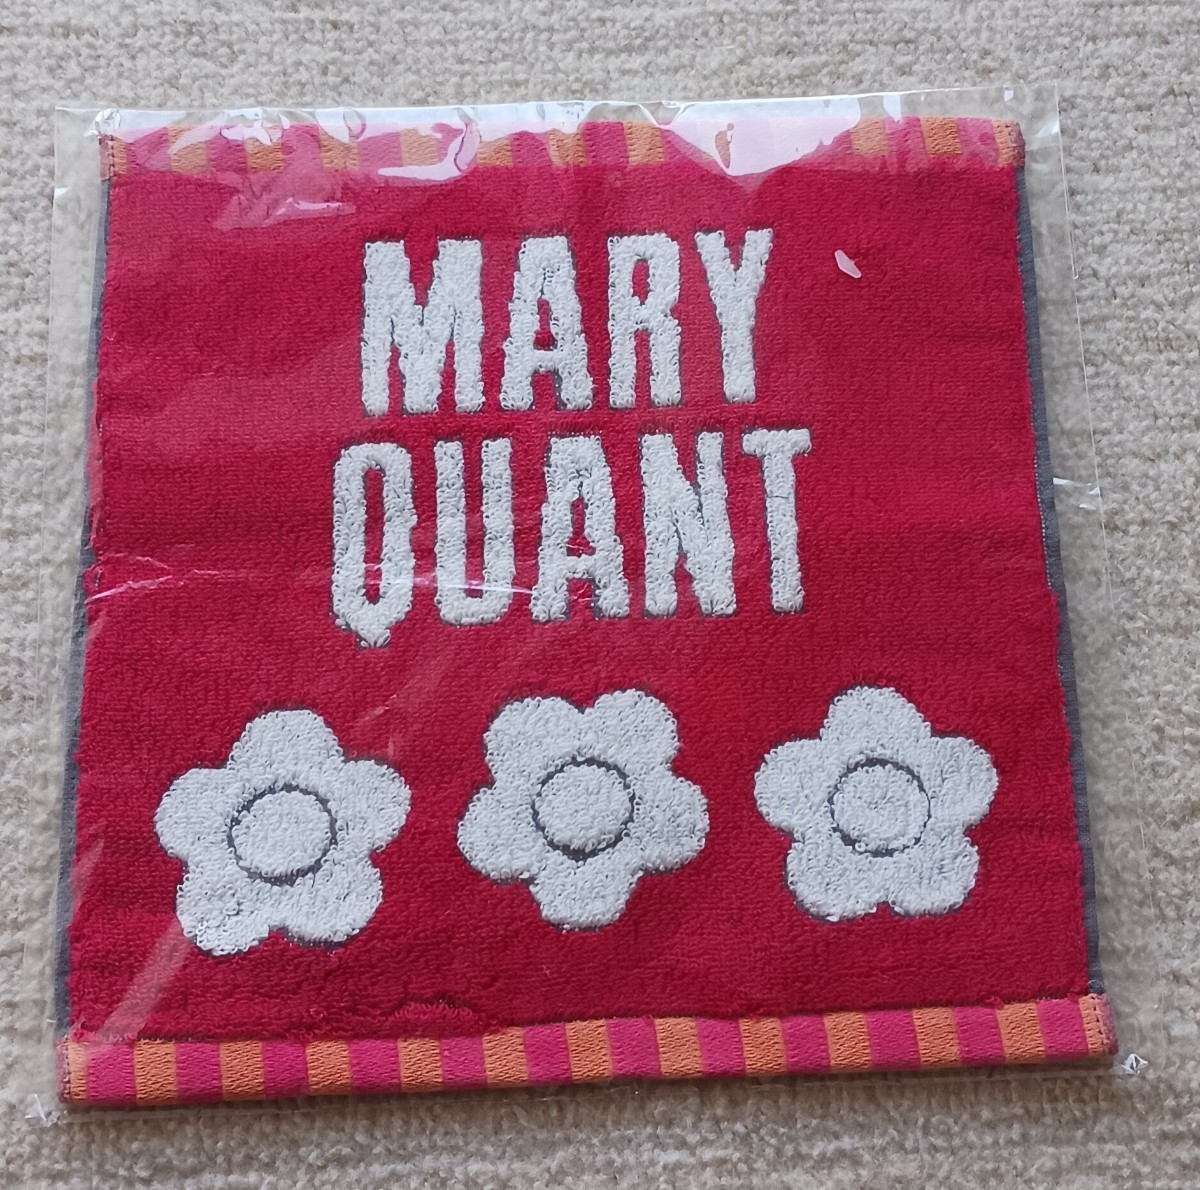 MARY QUANT* Mary Quant * Дэйзи * Mini полотенце * красный * красный * новый товар * с биркой 